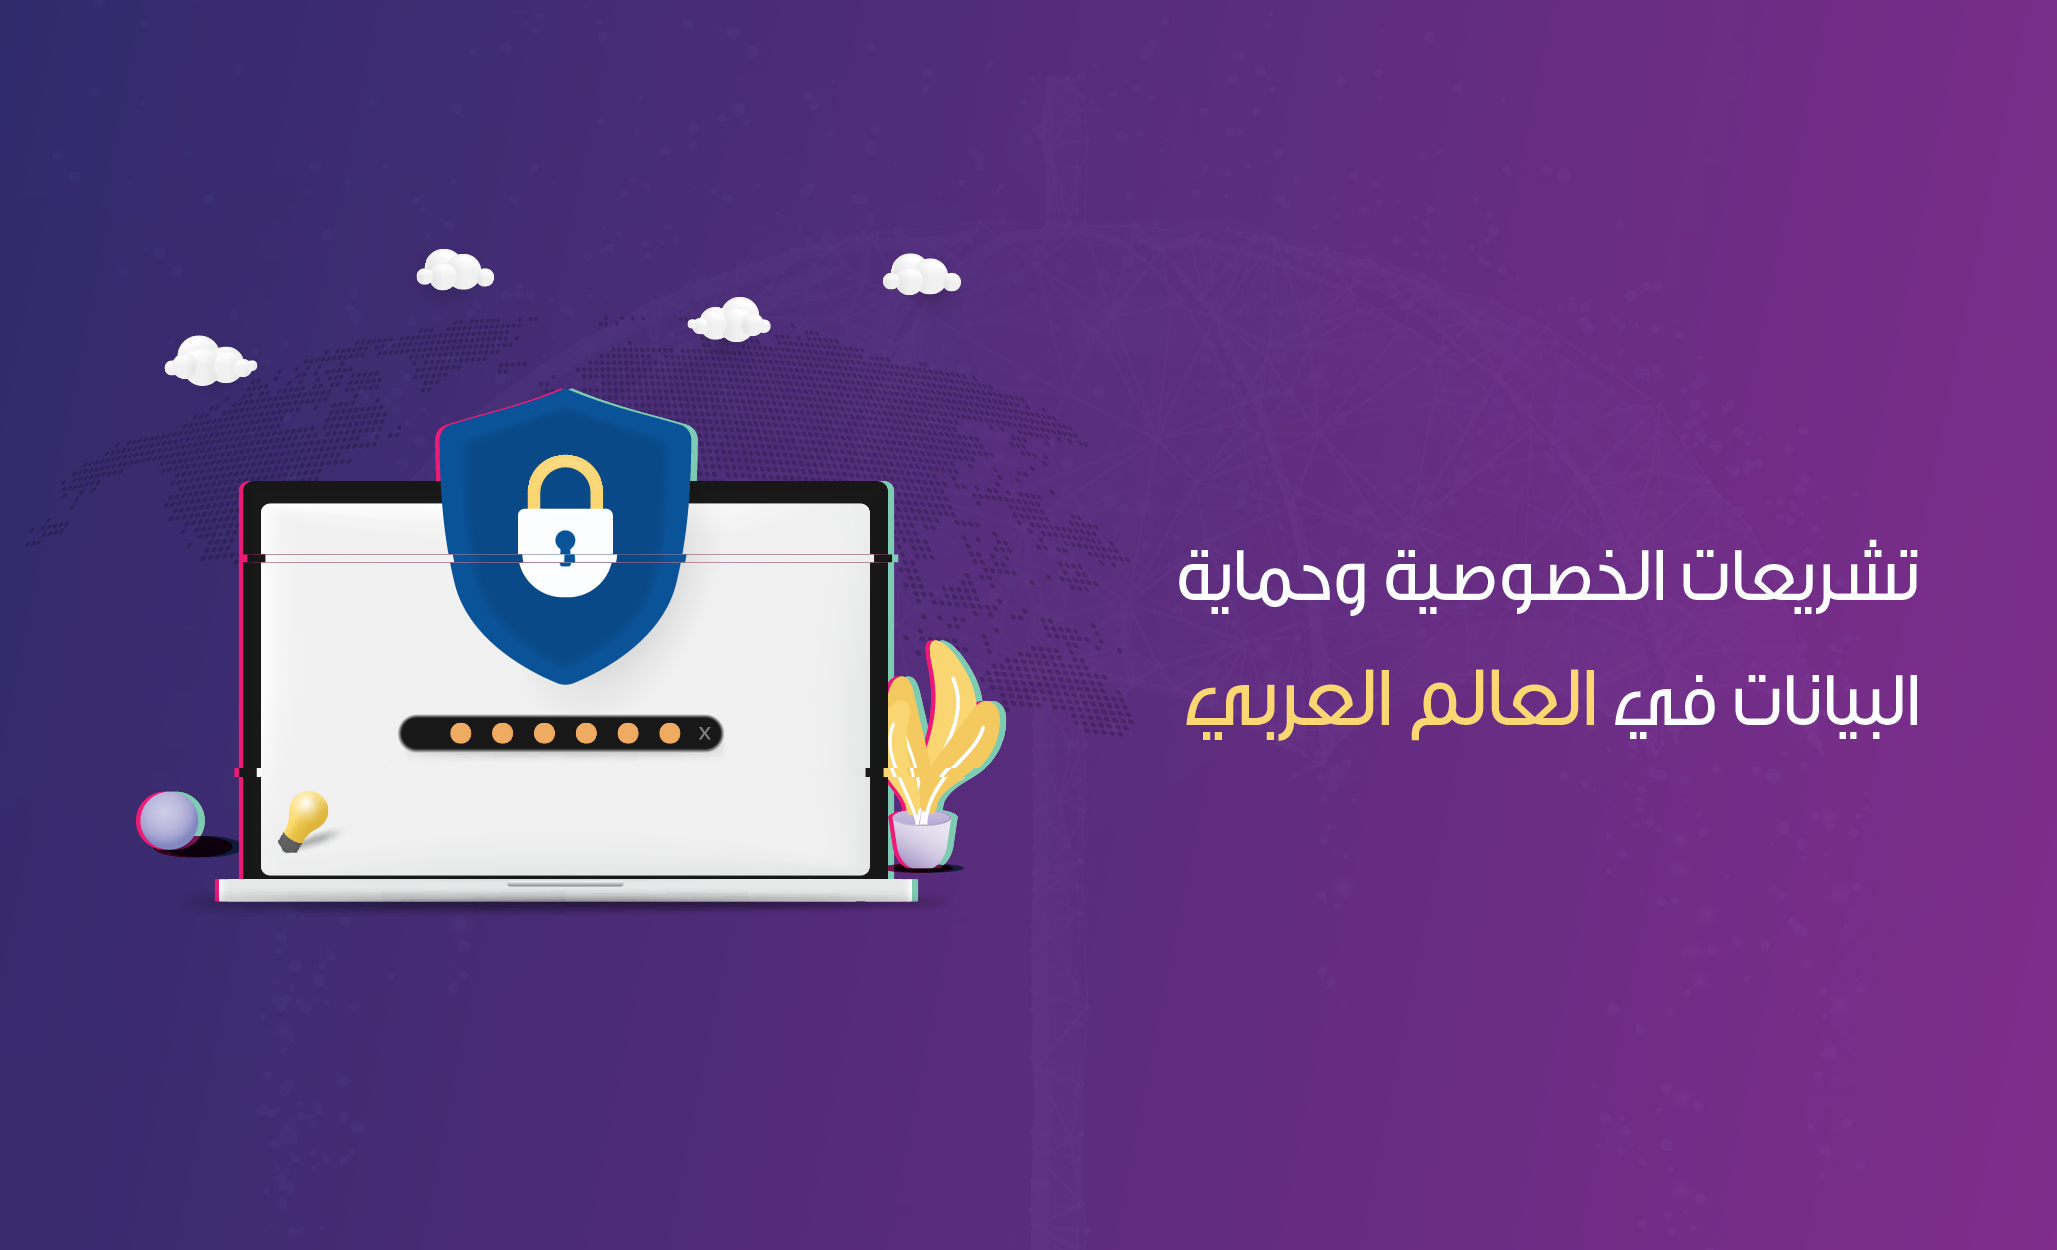 تشريعات الخصوصية وحماية  البيانات في العالم العربي